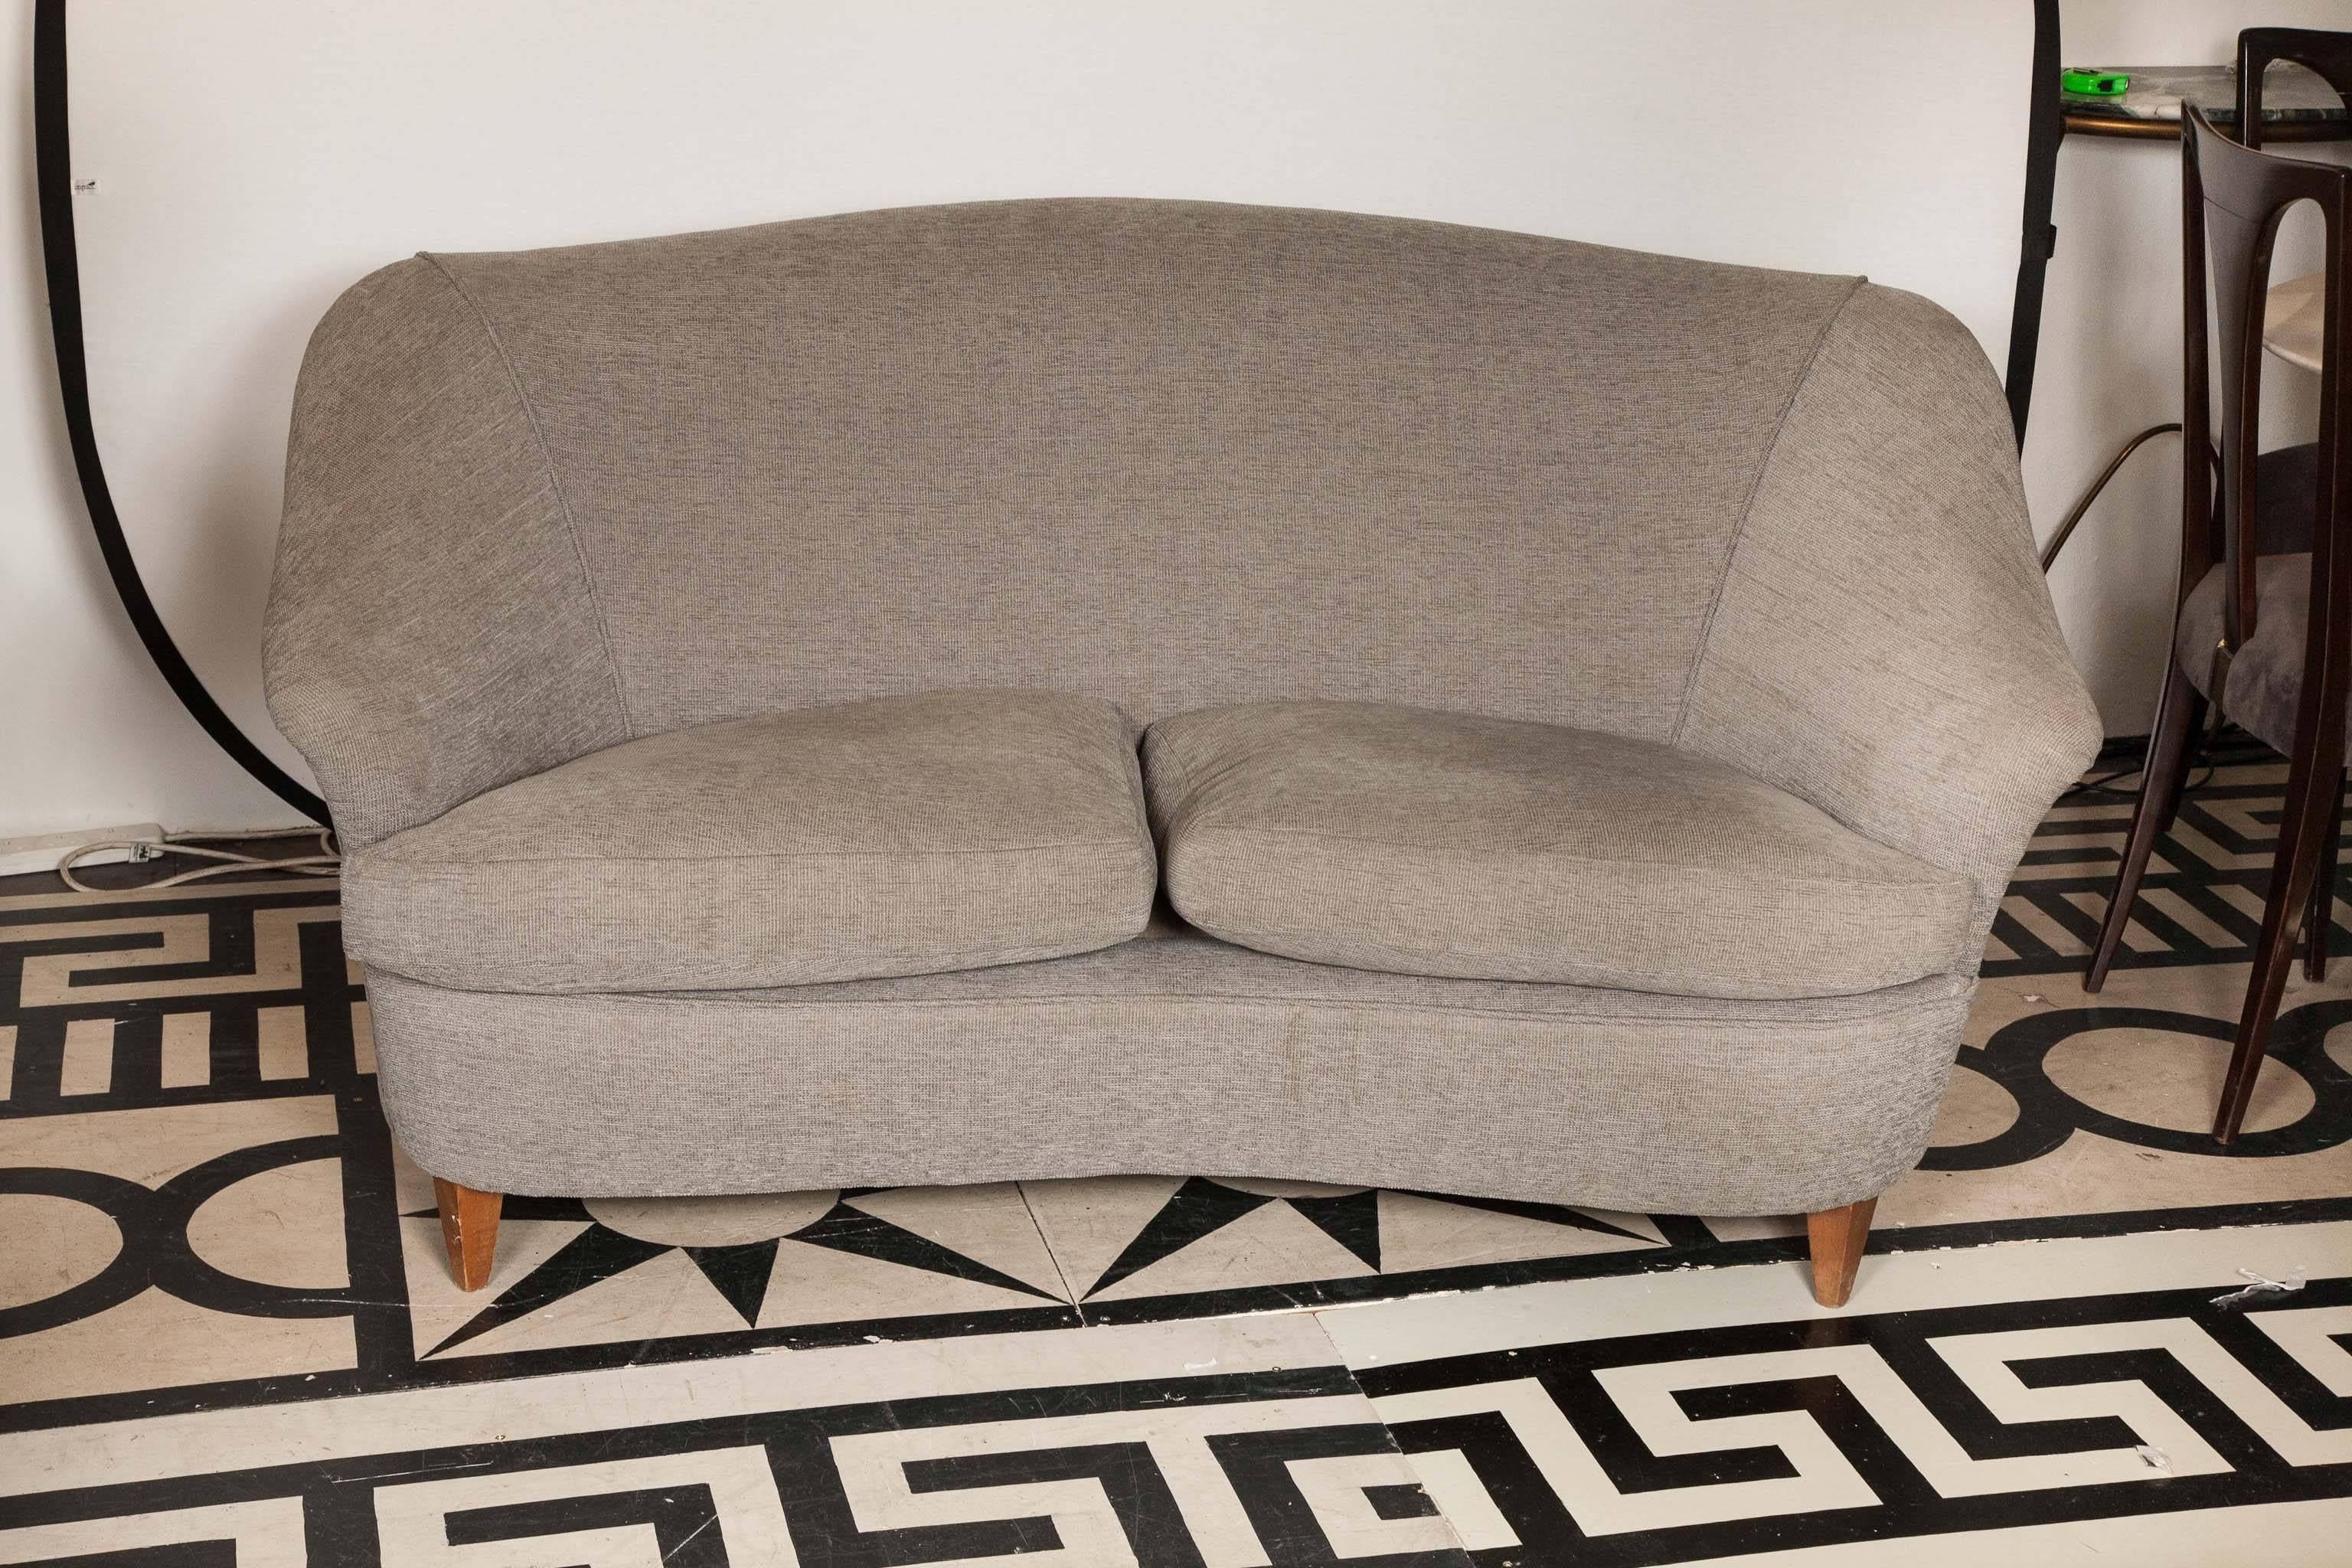 1940-1945s Italian sofa attributed to Ico Parisi.